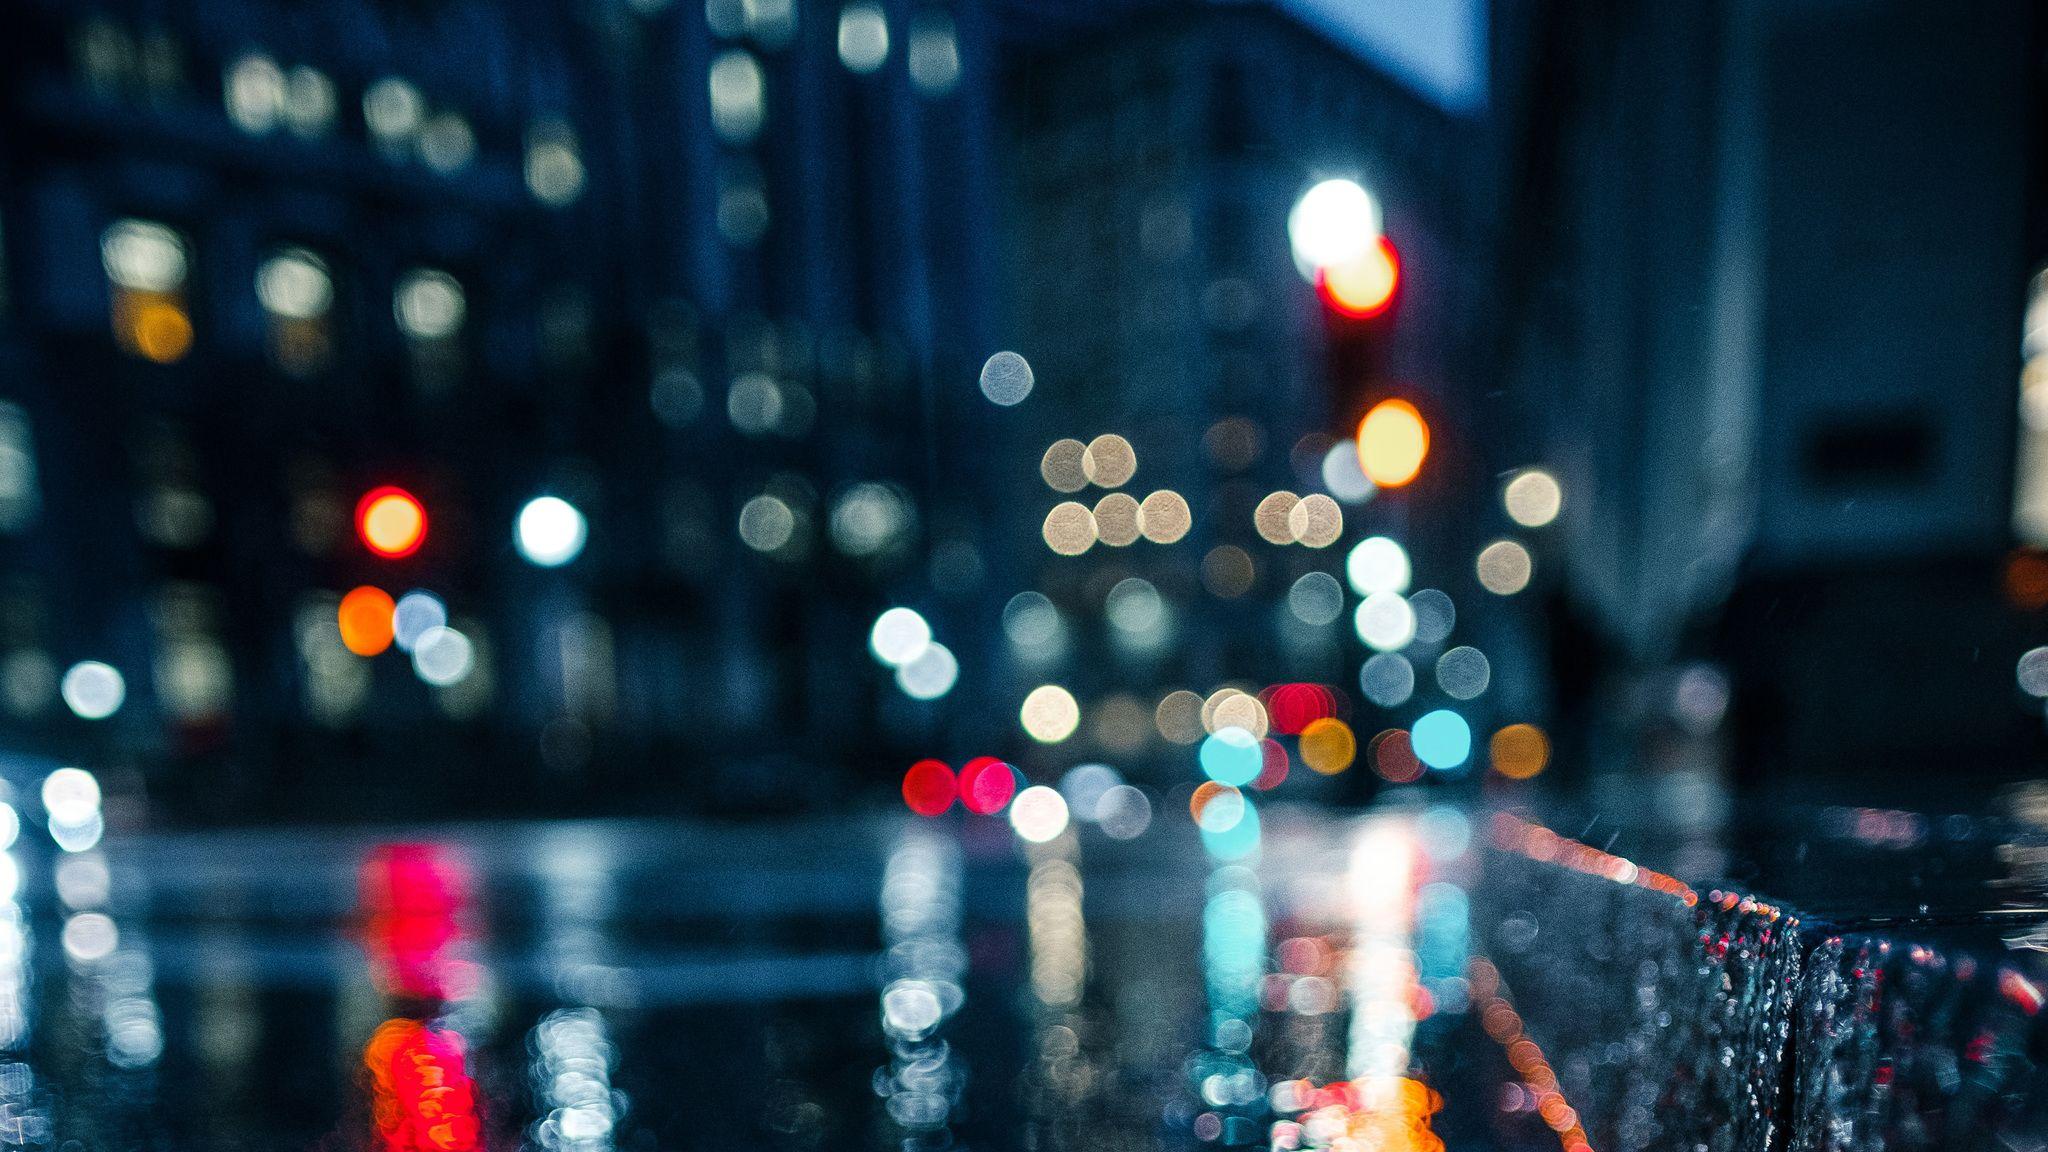 City Rain Blur Bokeh Effect 2048x1152 Resolution HD 4k